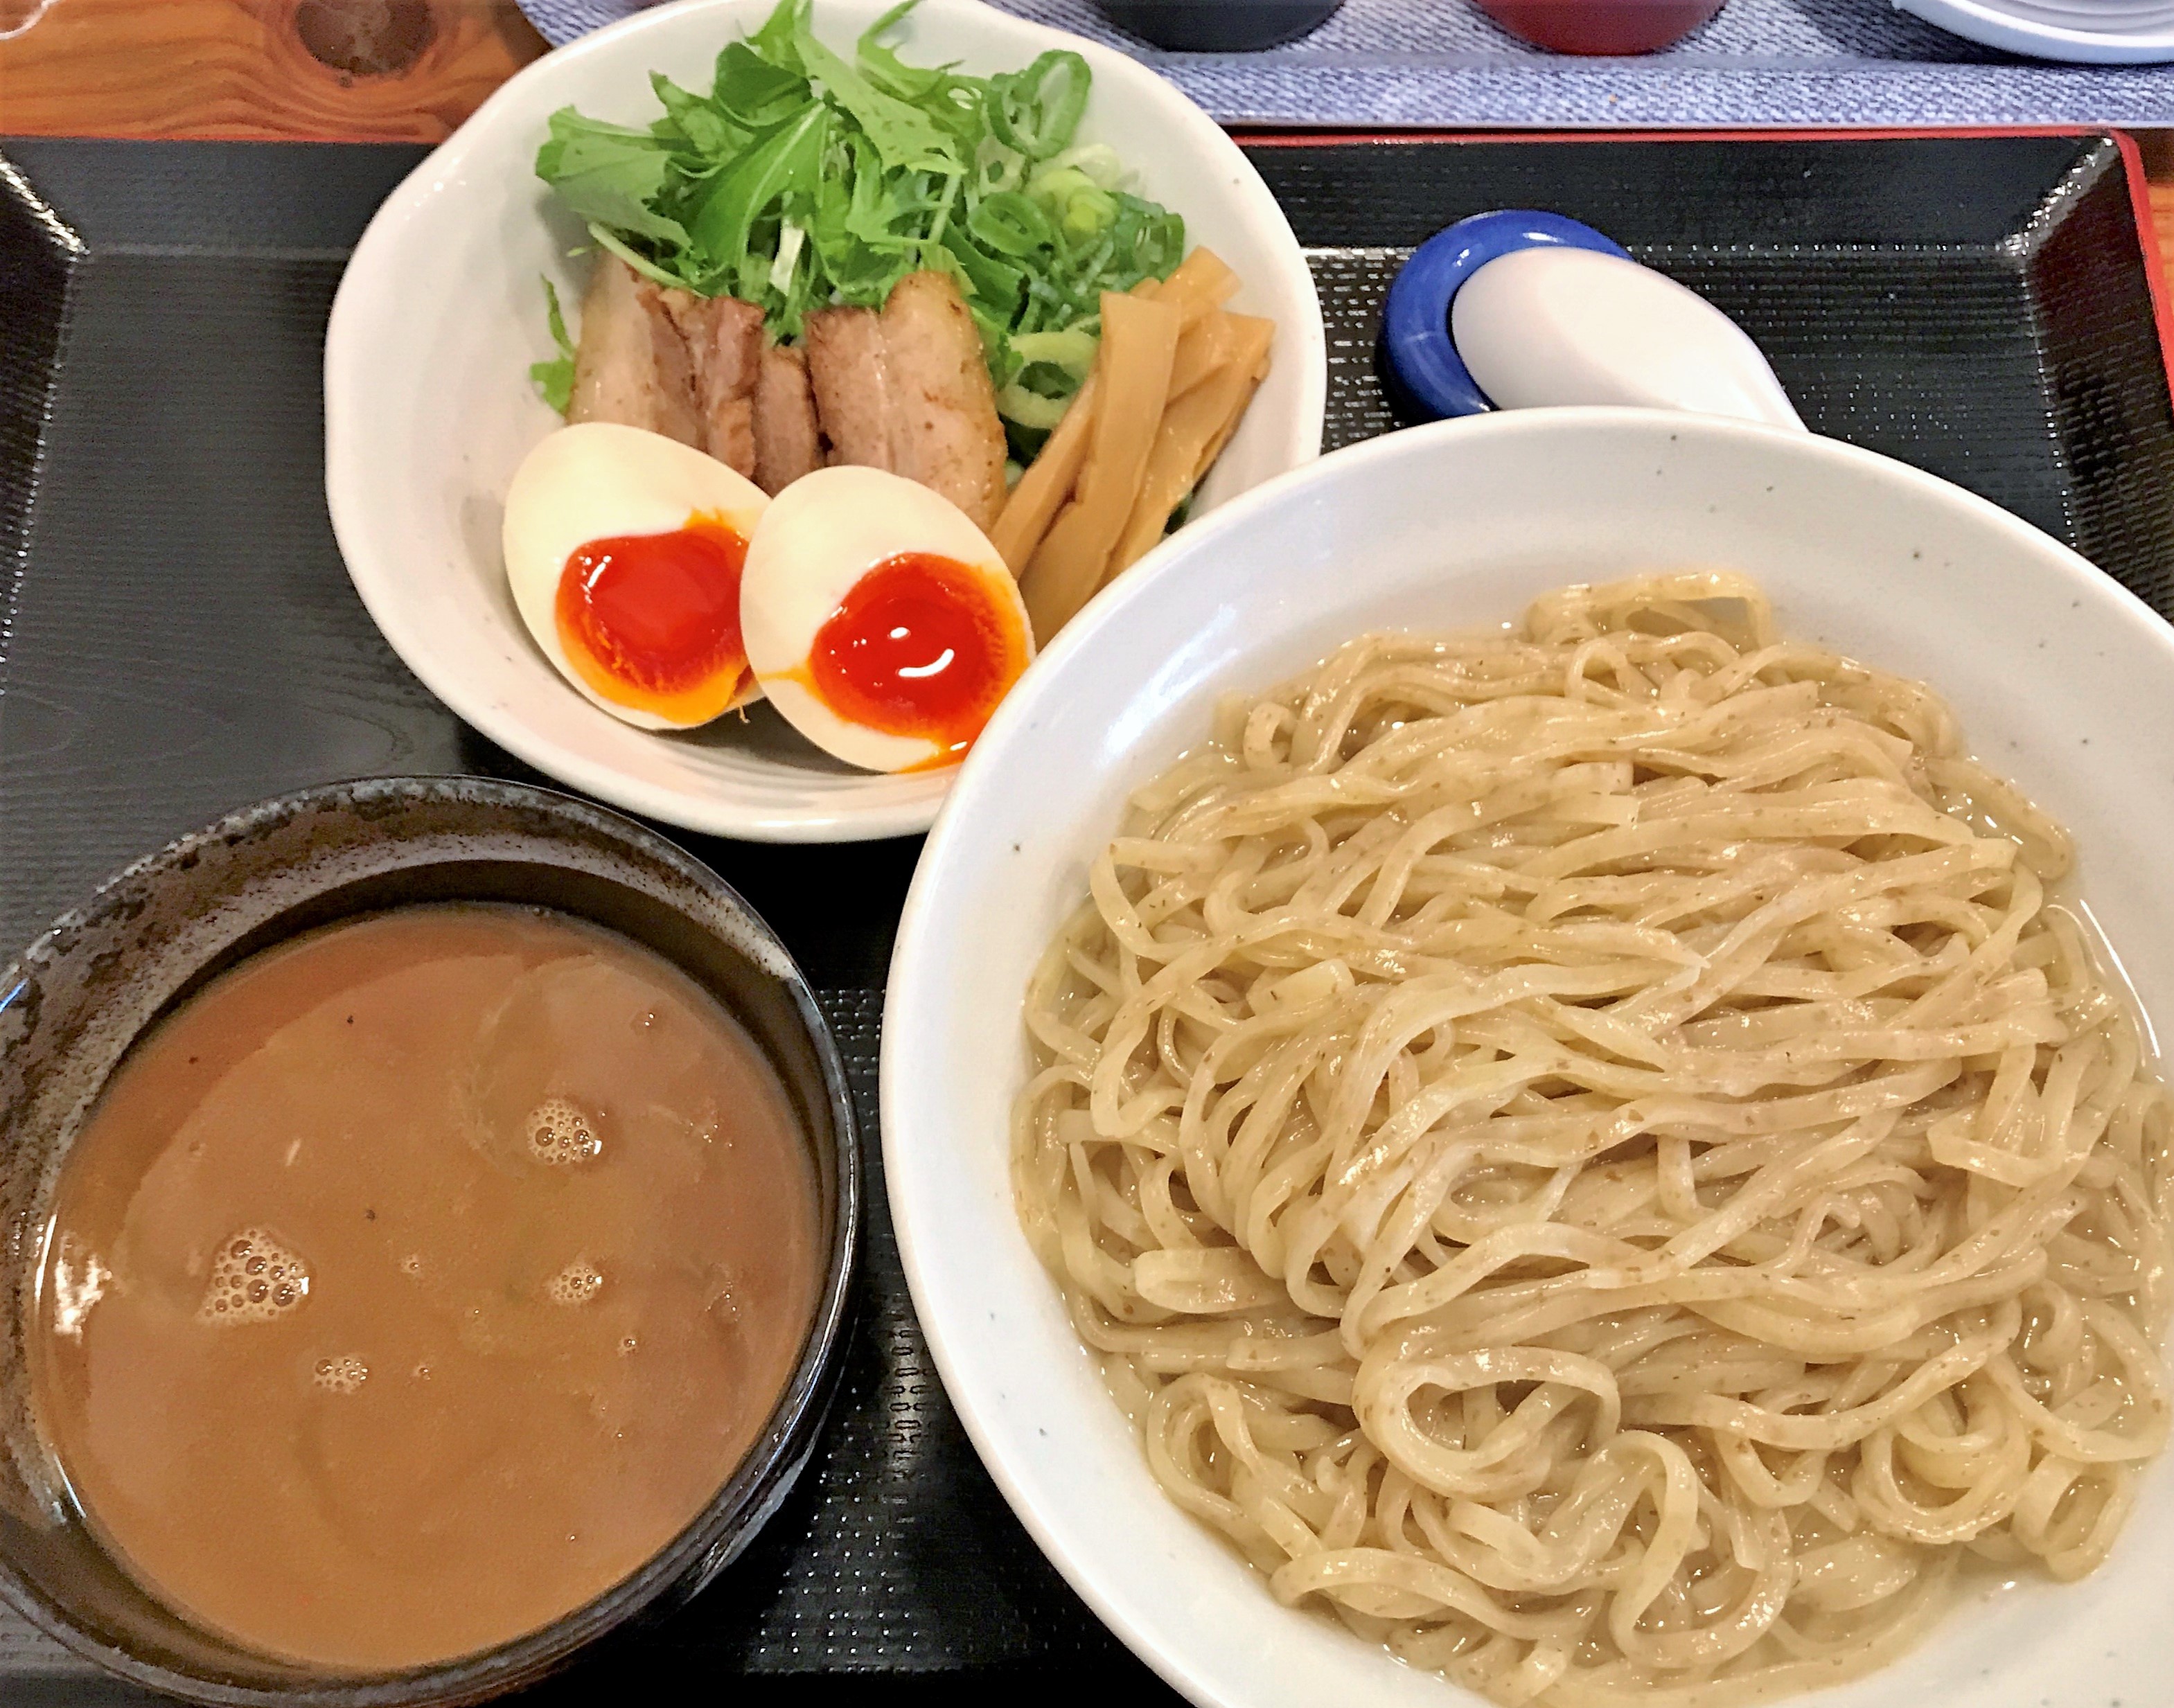 らーめん喝采 14時からの提供 懐かしい感じの つけ麺 をガッツリ食べる Masaの食べ歩き記録